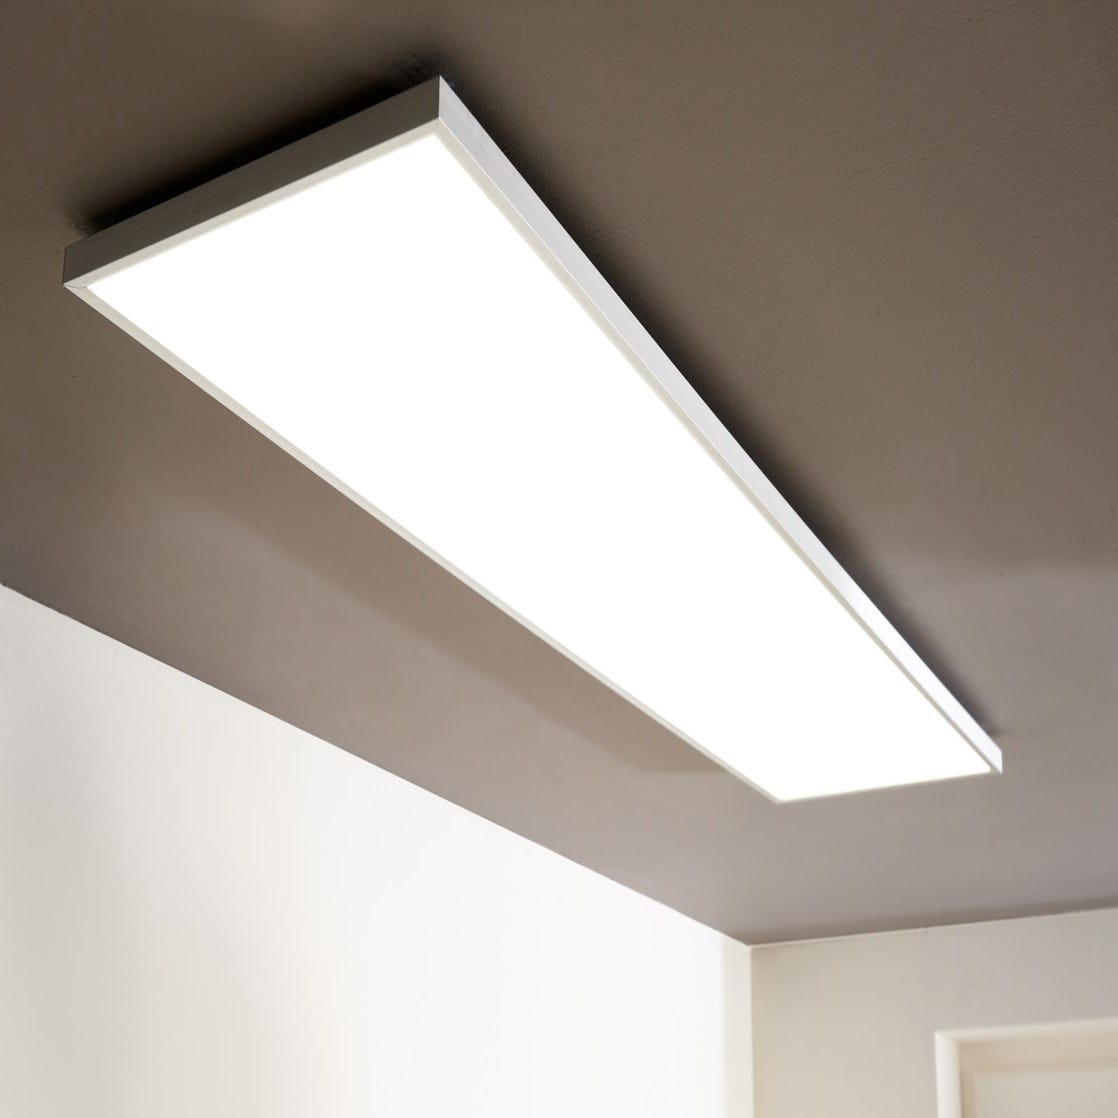 Panneau LED intégrée GDANSK INSPIRE 120 x 30 cm, blanc chaud / froid, blanc